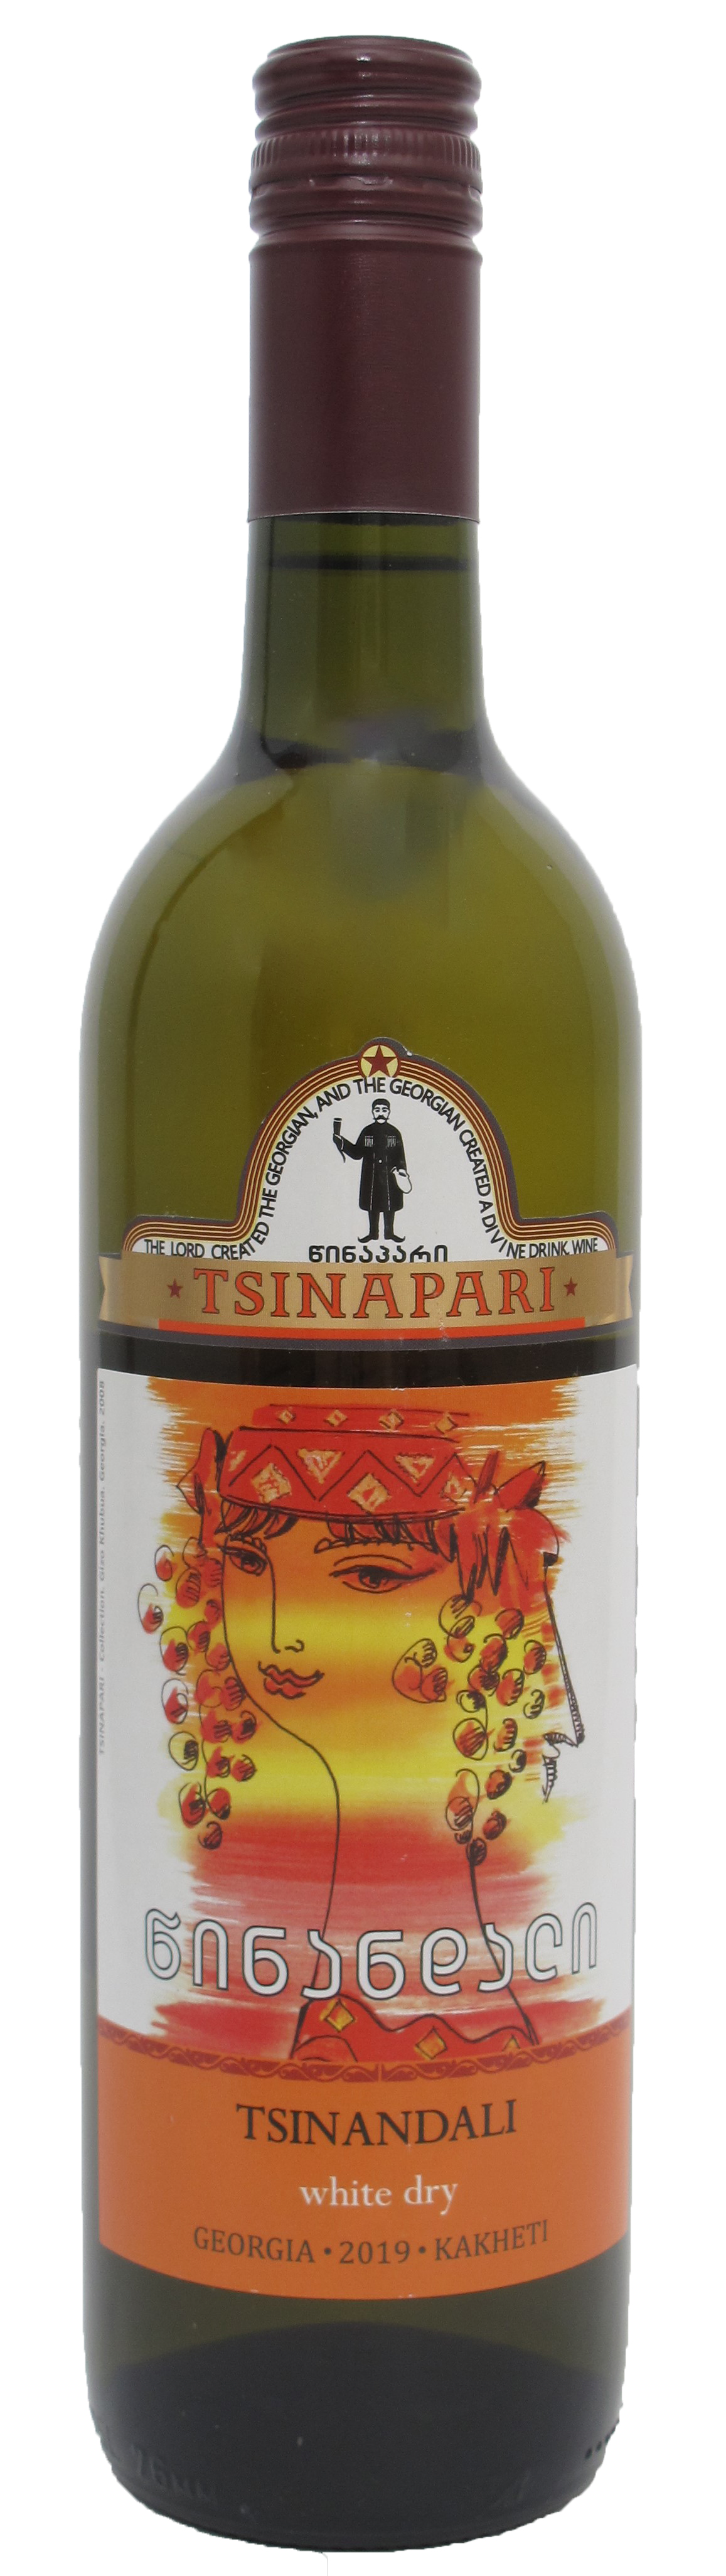 TSINANDALI - - Amphorenwein Wein Georgischer